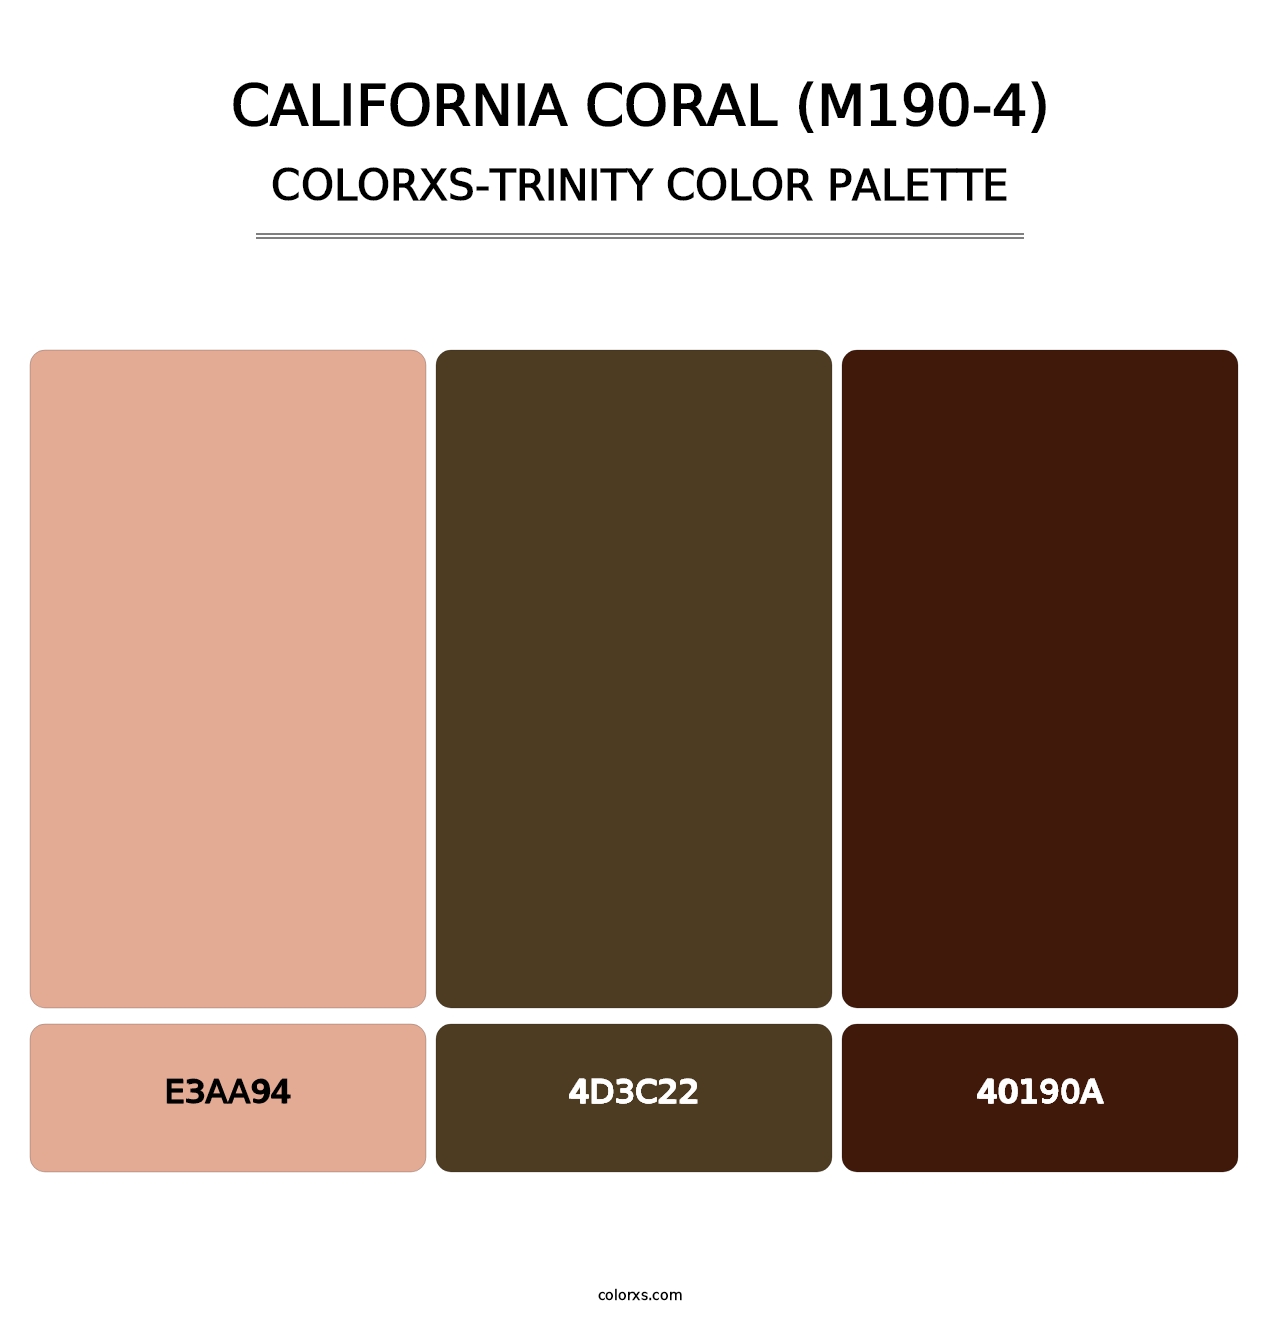 California Coral (M190-4) - Colorxs Trinity Palette